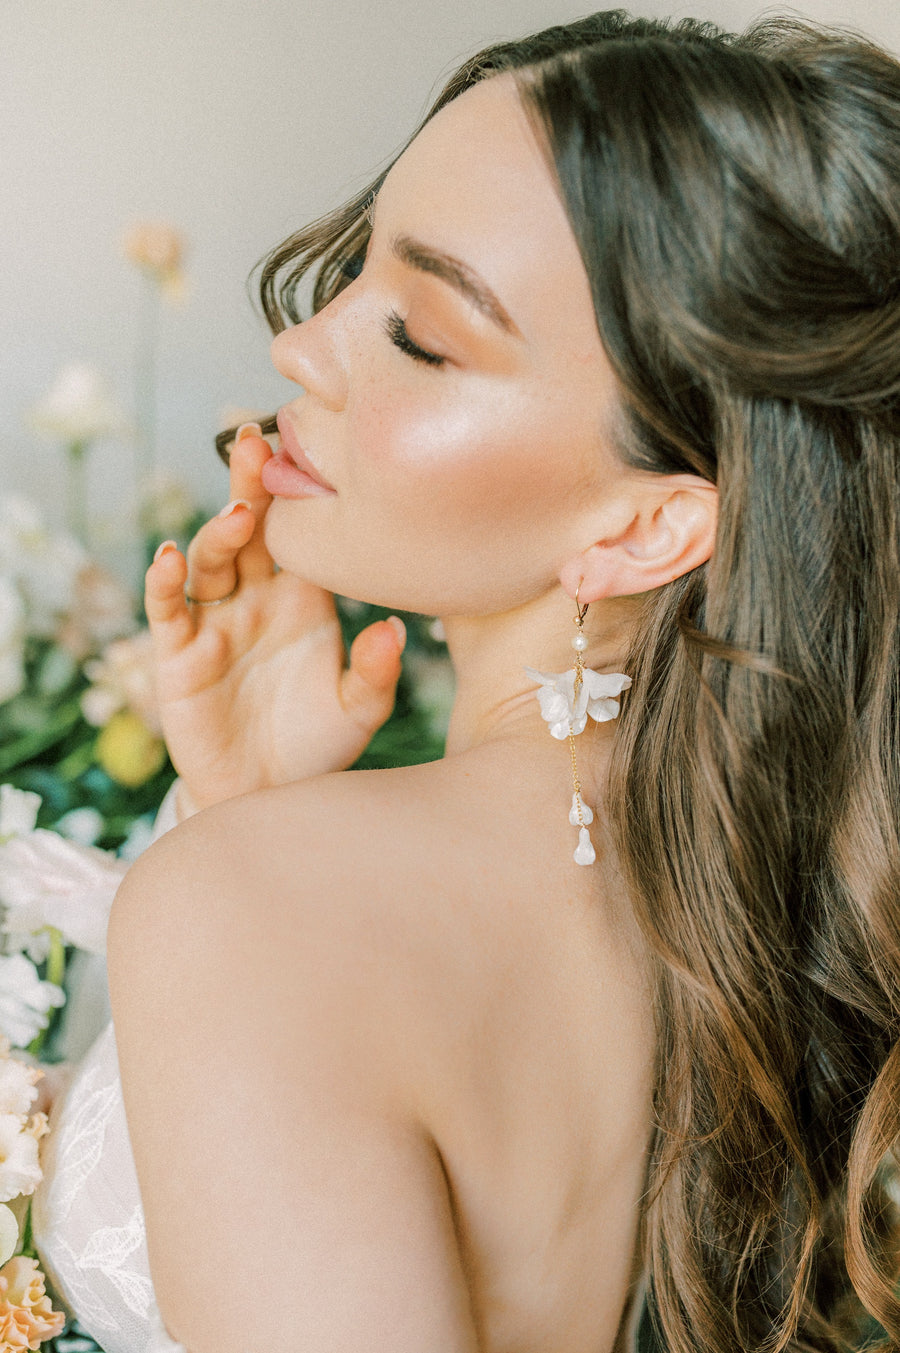 Bride wearing flower wedding earrings by Joanna Bisley Designs.